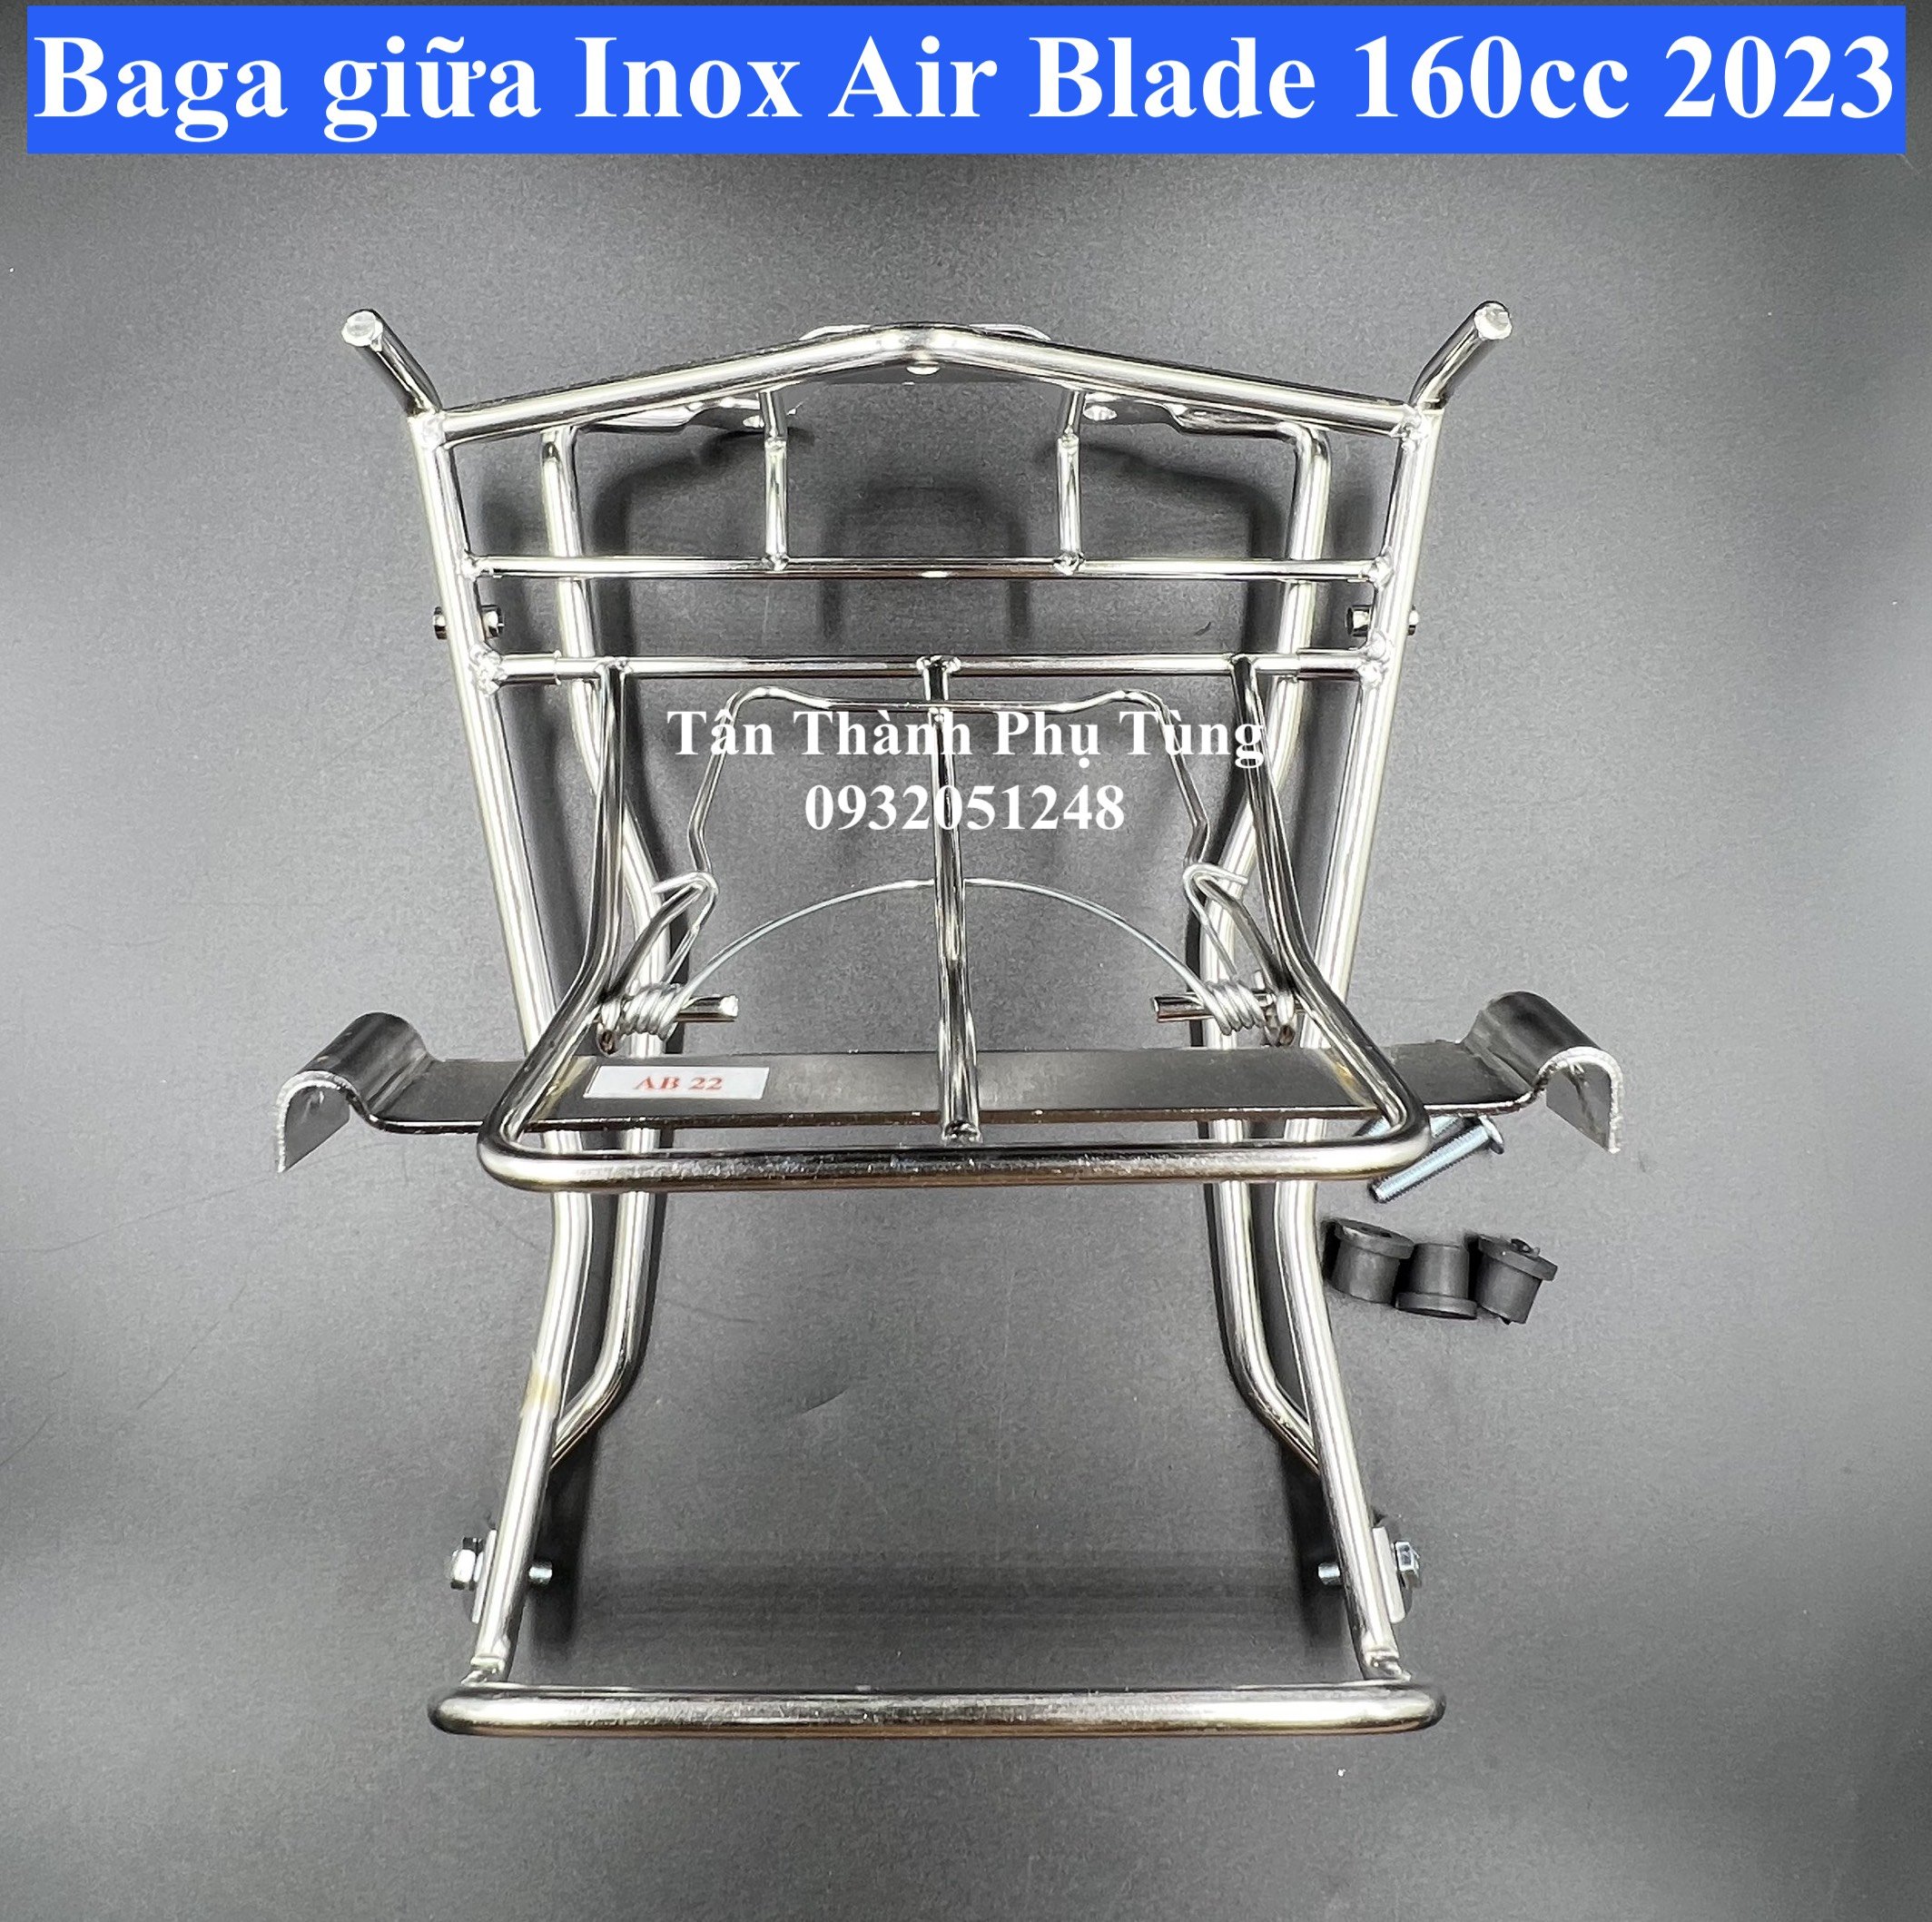 Combo Thảm lót chân , Baga giữa Inox dành cho Air Blade 160cc 2023